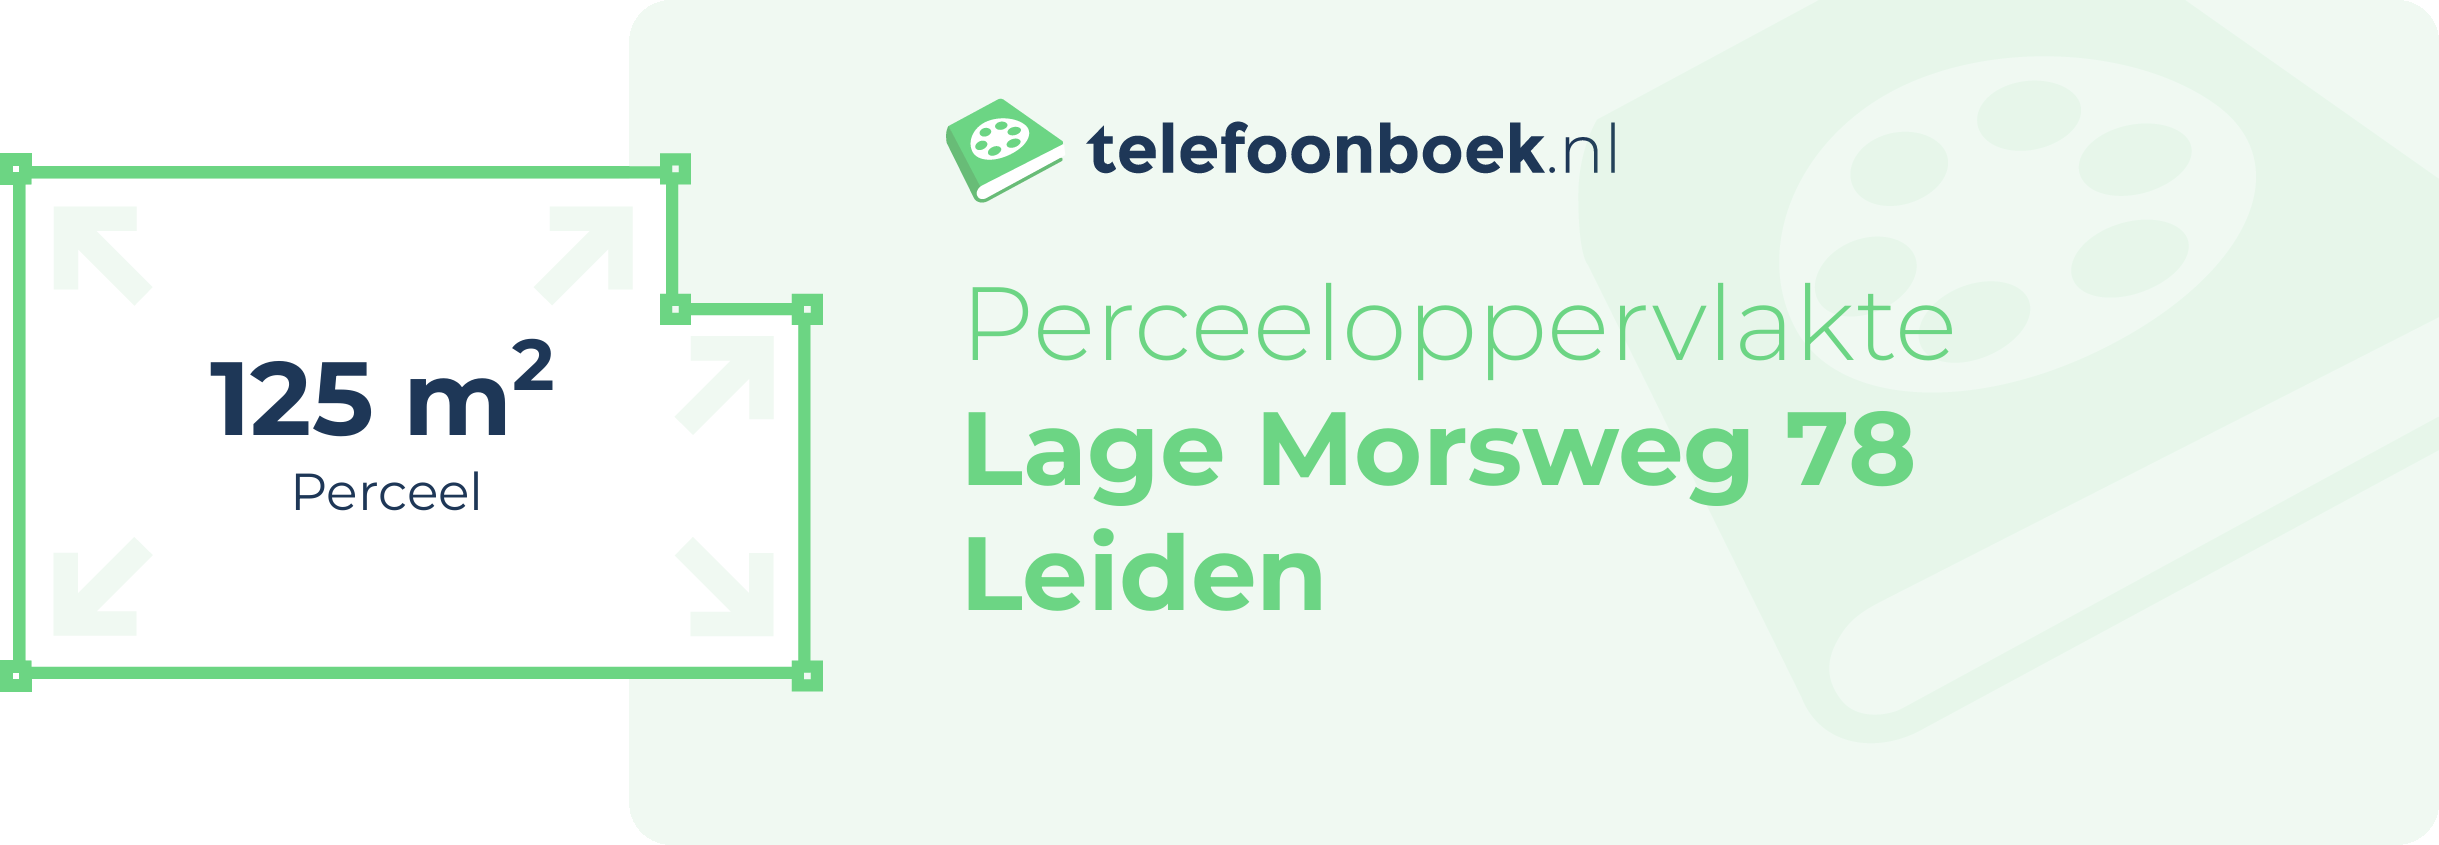 Perceeloppervlakte Lage Morsweg 78 Leiden